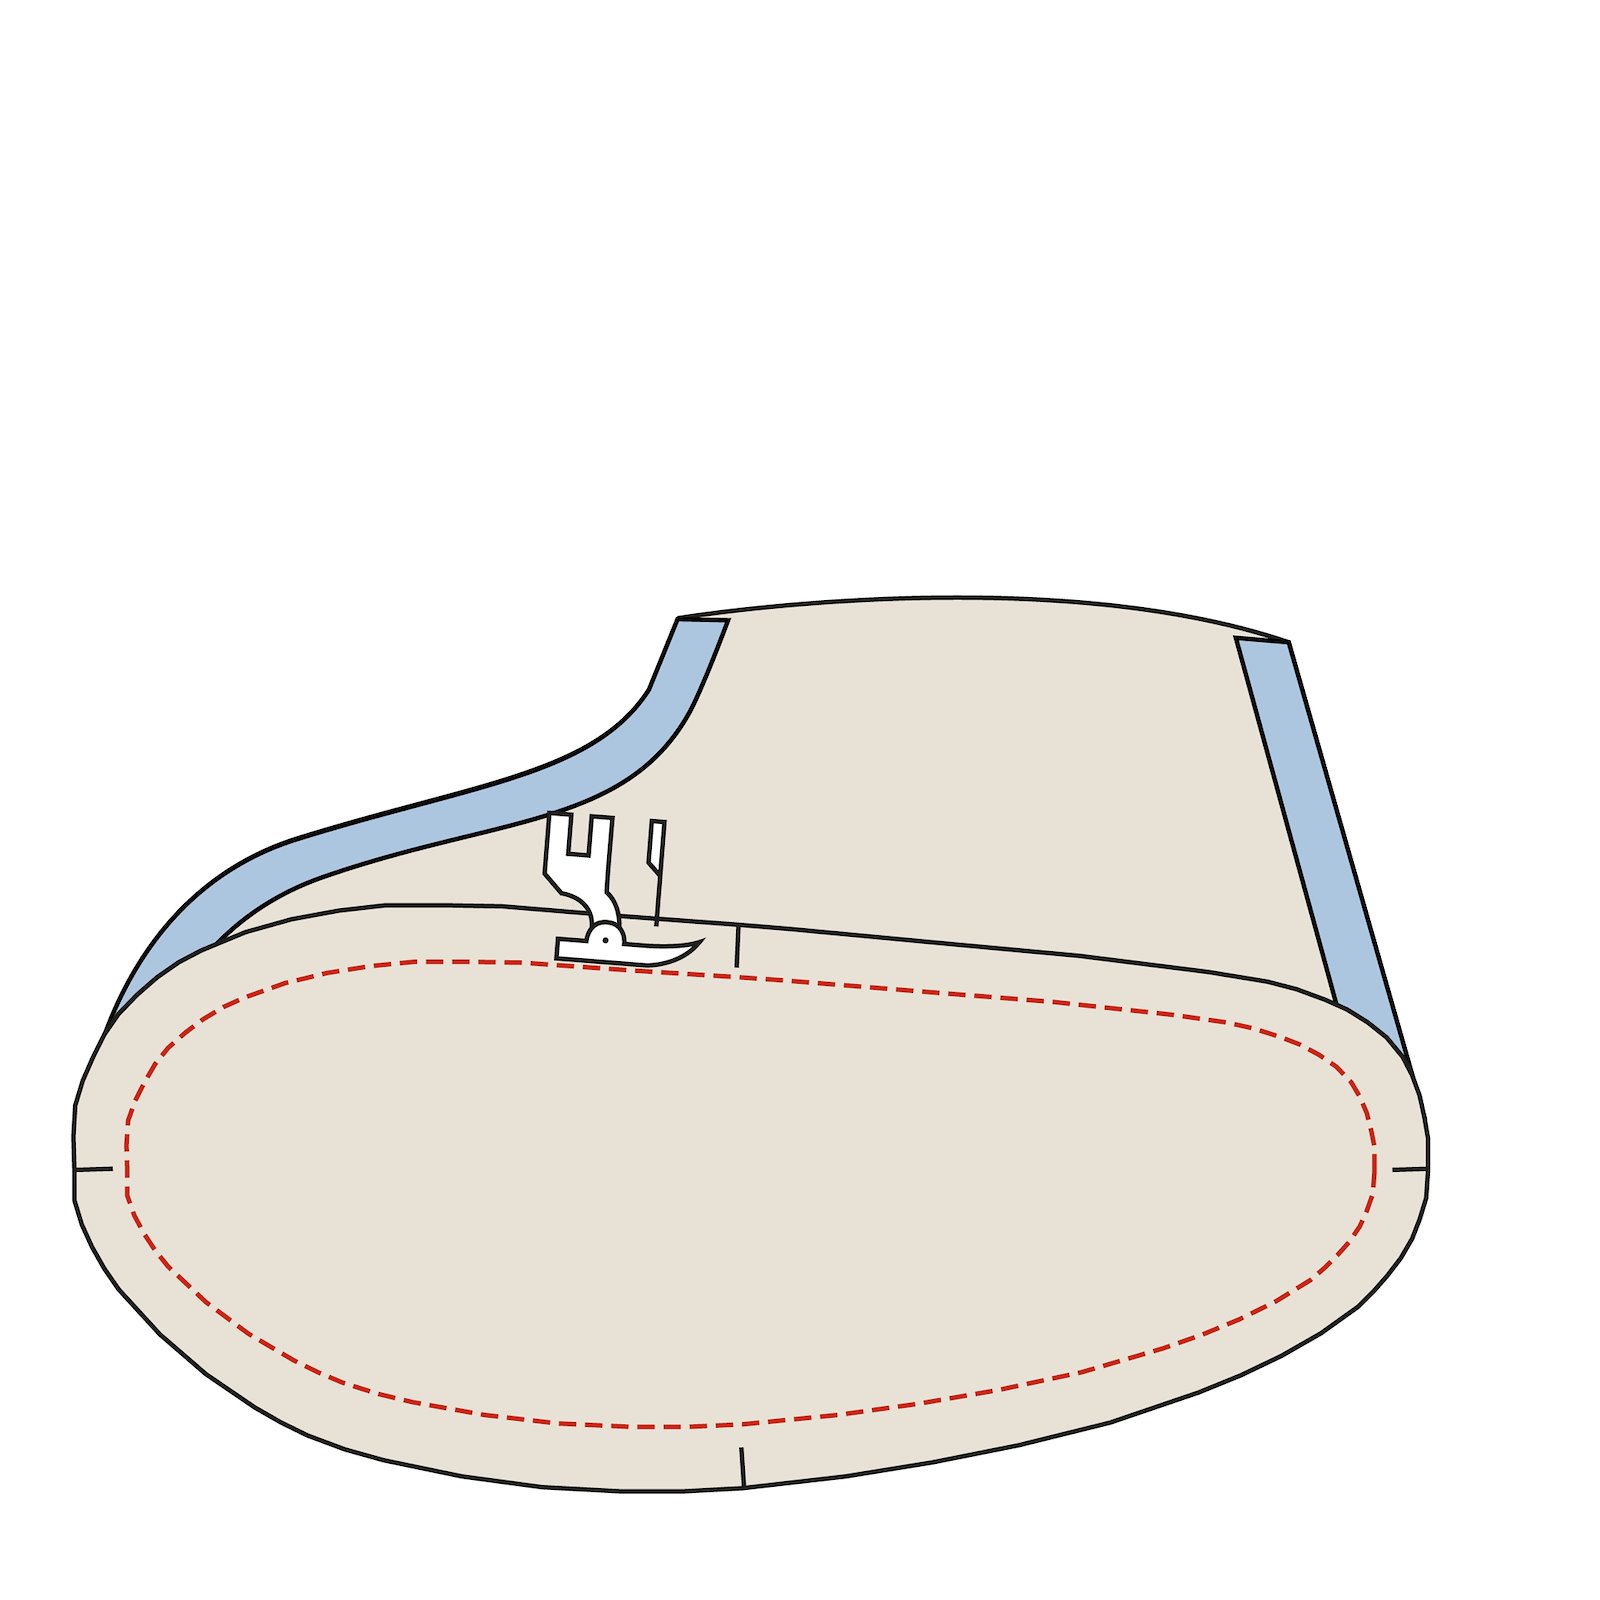 Sewing pattern: Adult Slippers DIY2315_step4.jpg